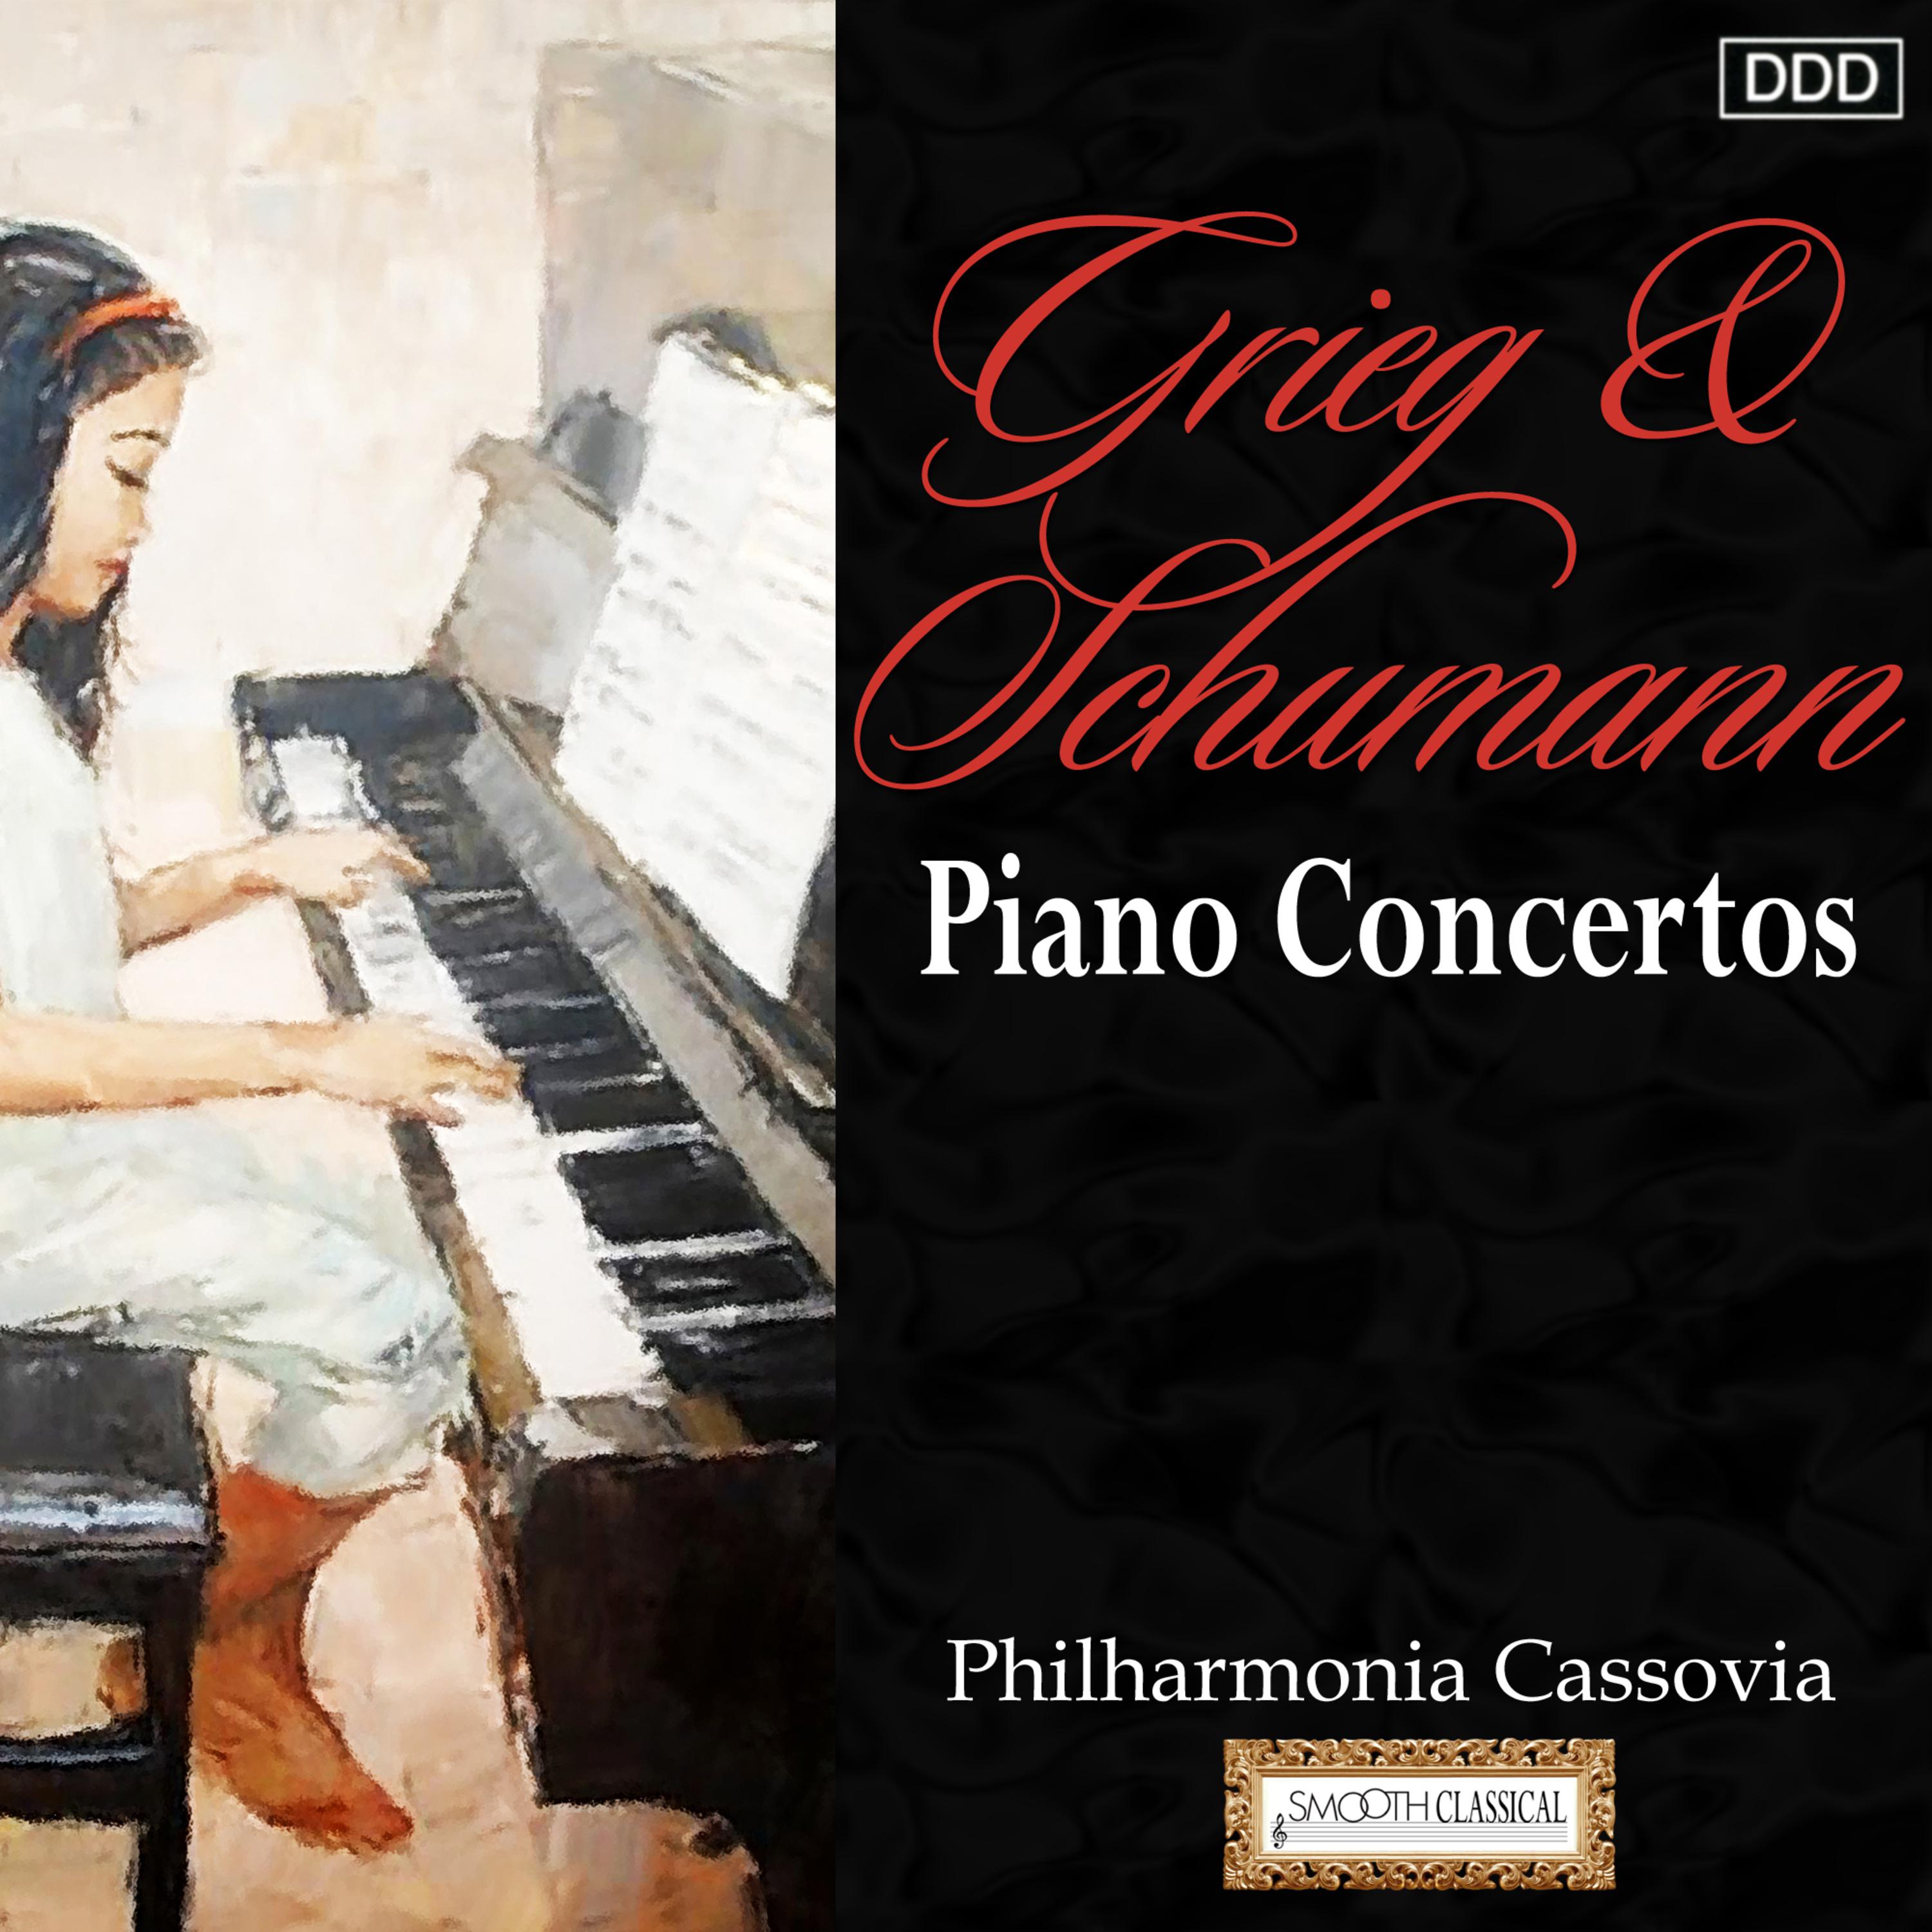 Piano Concerto in A Minor, Op. 54: II. Intermezzo: Andantino grazioso - III. Allegro vivace